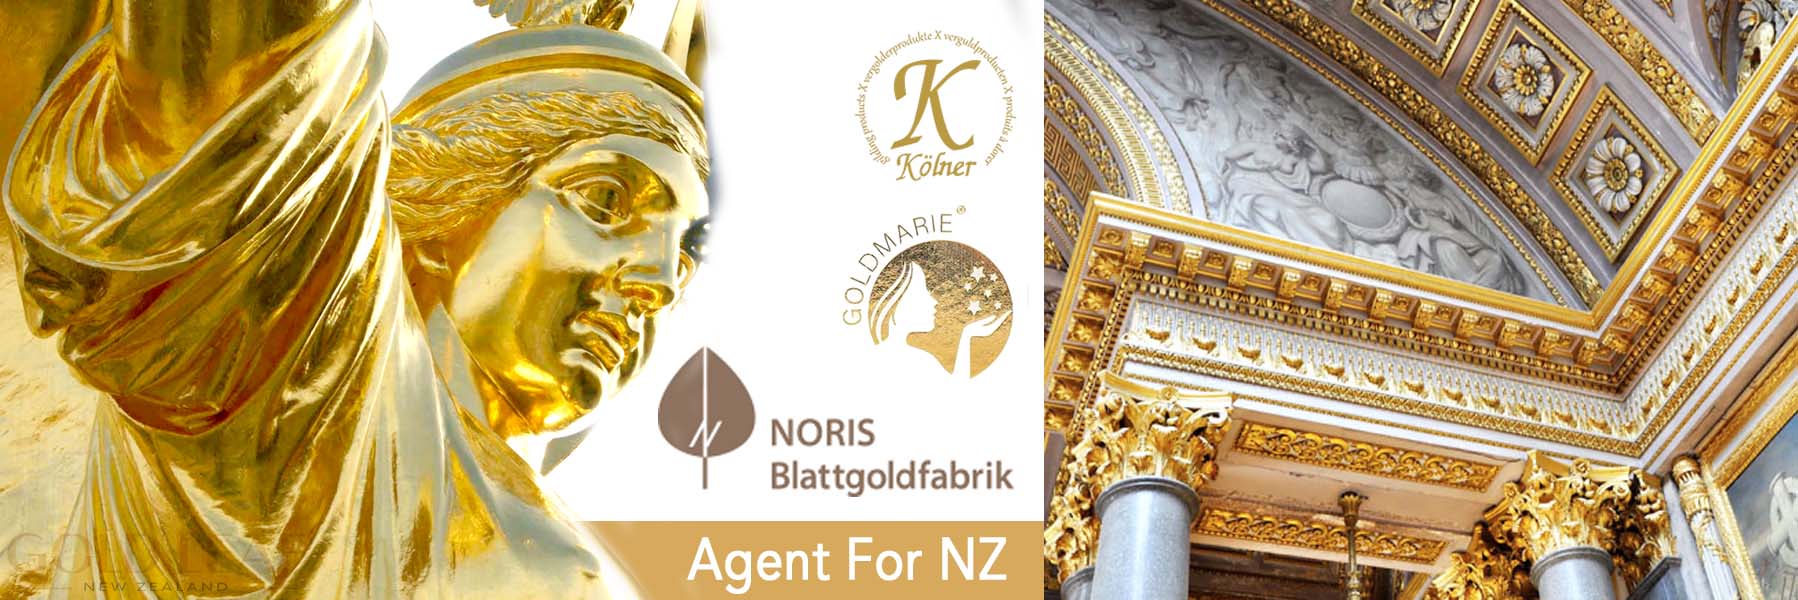 Noris Agent For NZ Gold Leaf NZ